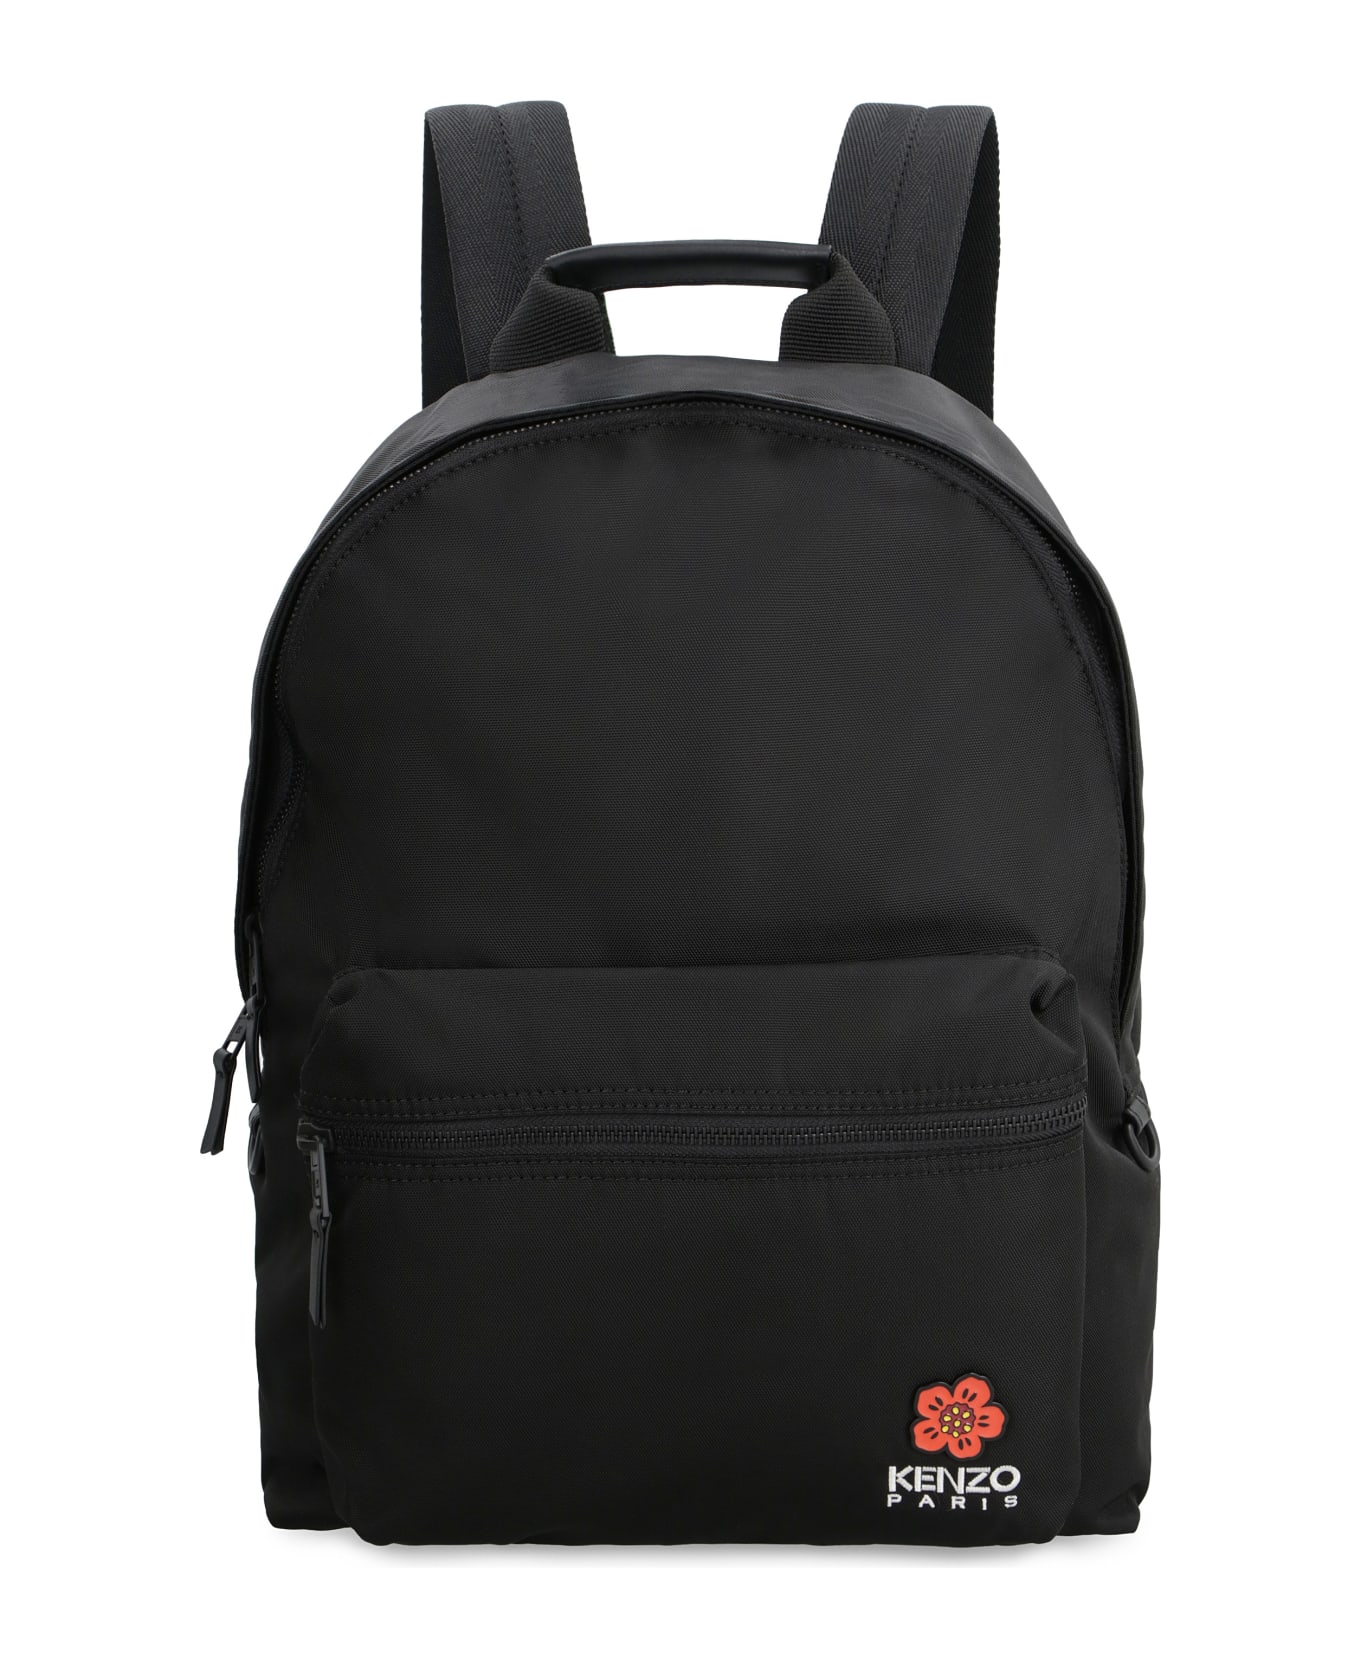 Kenzo Nylon Backpack